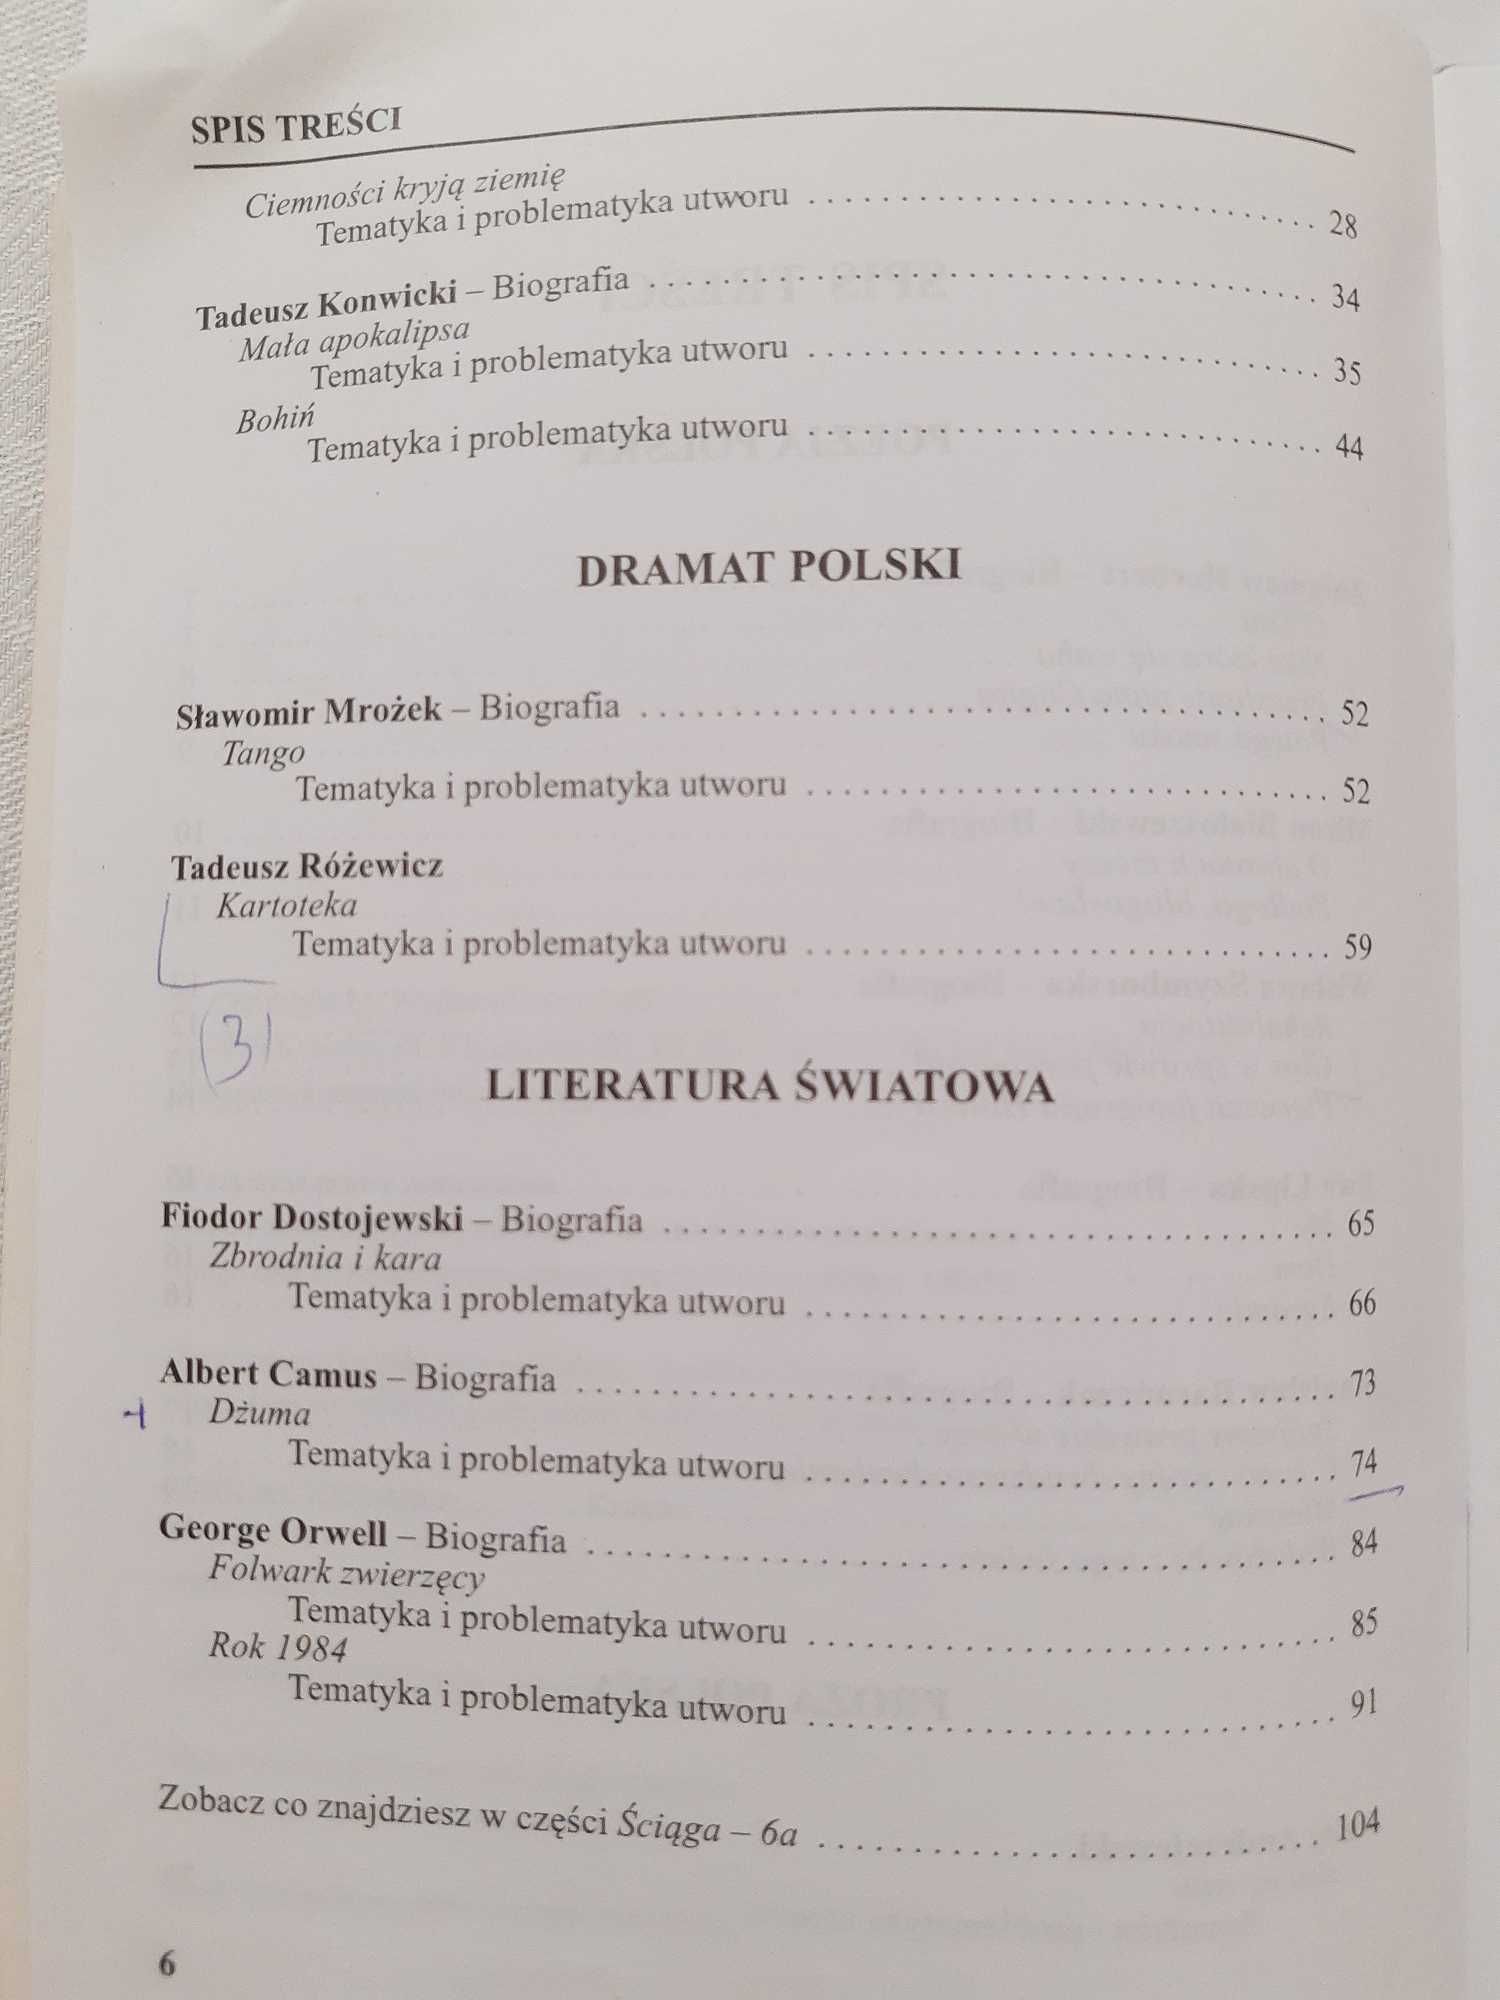 Ściąga cz. 6b - Polska literatura współczesna po 1956r.